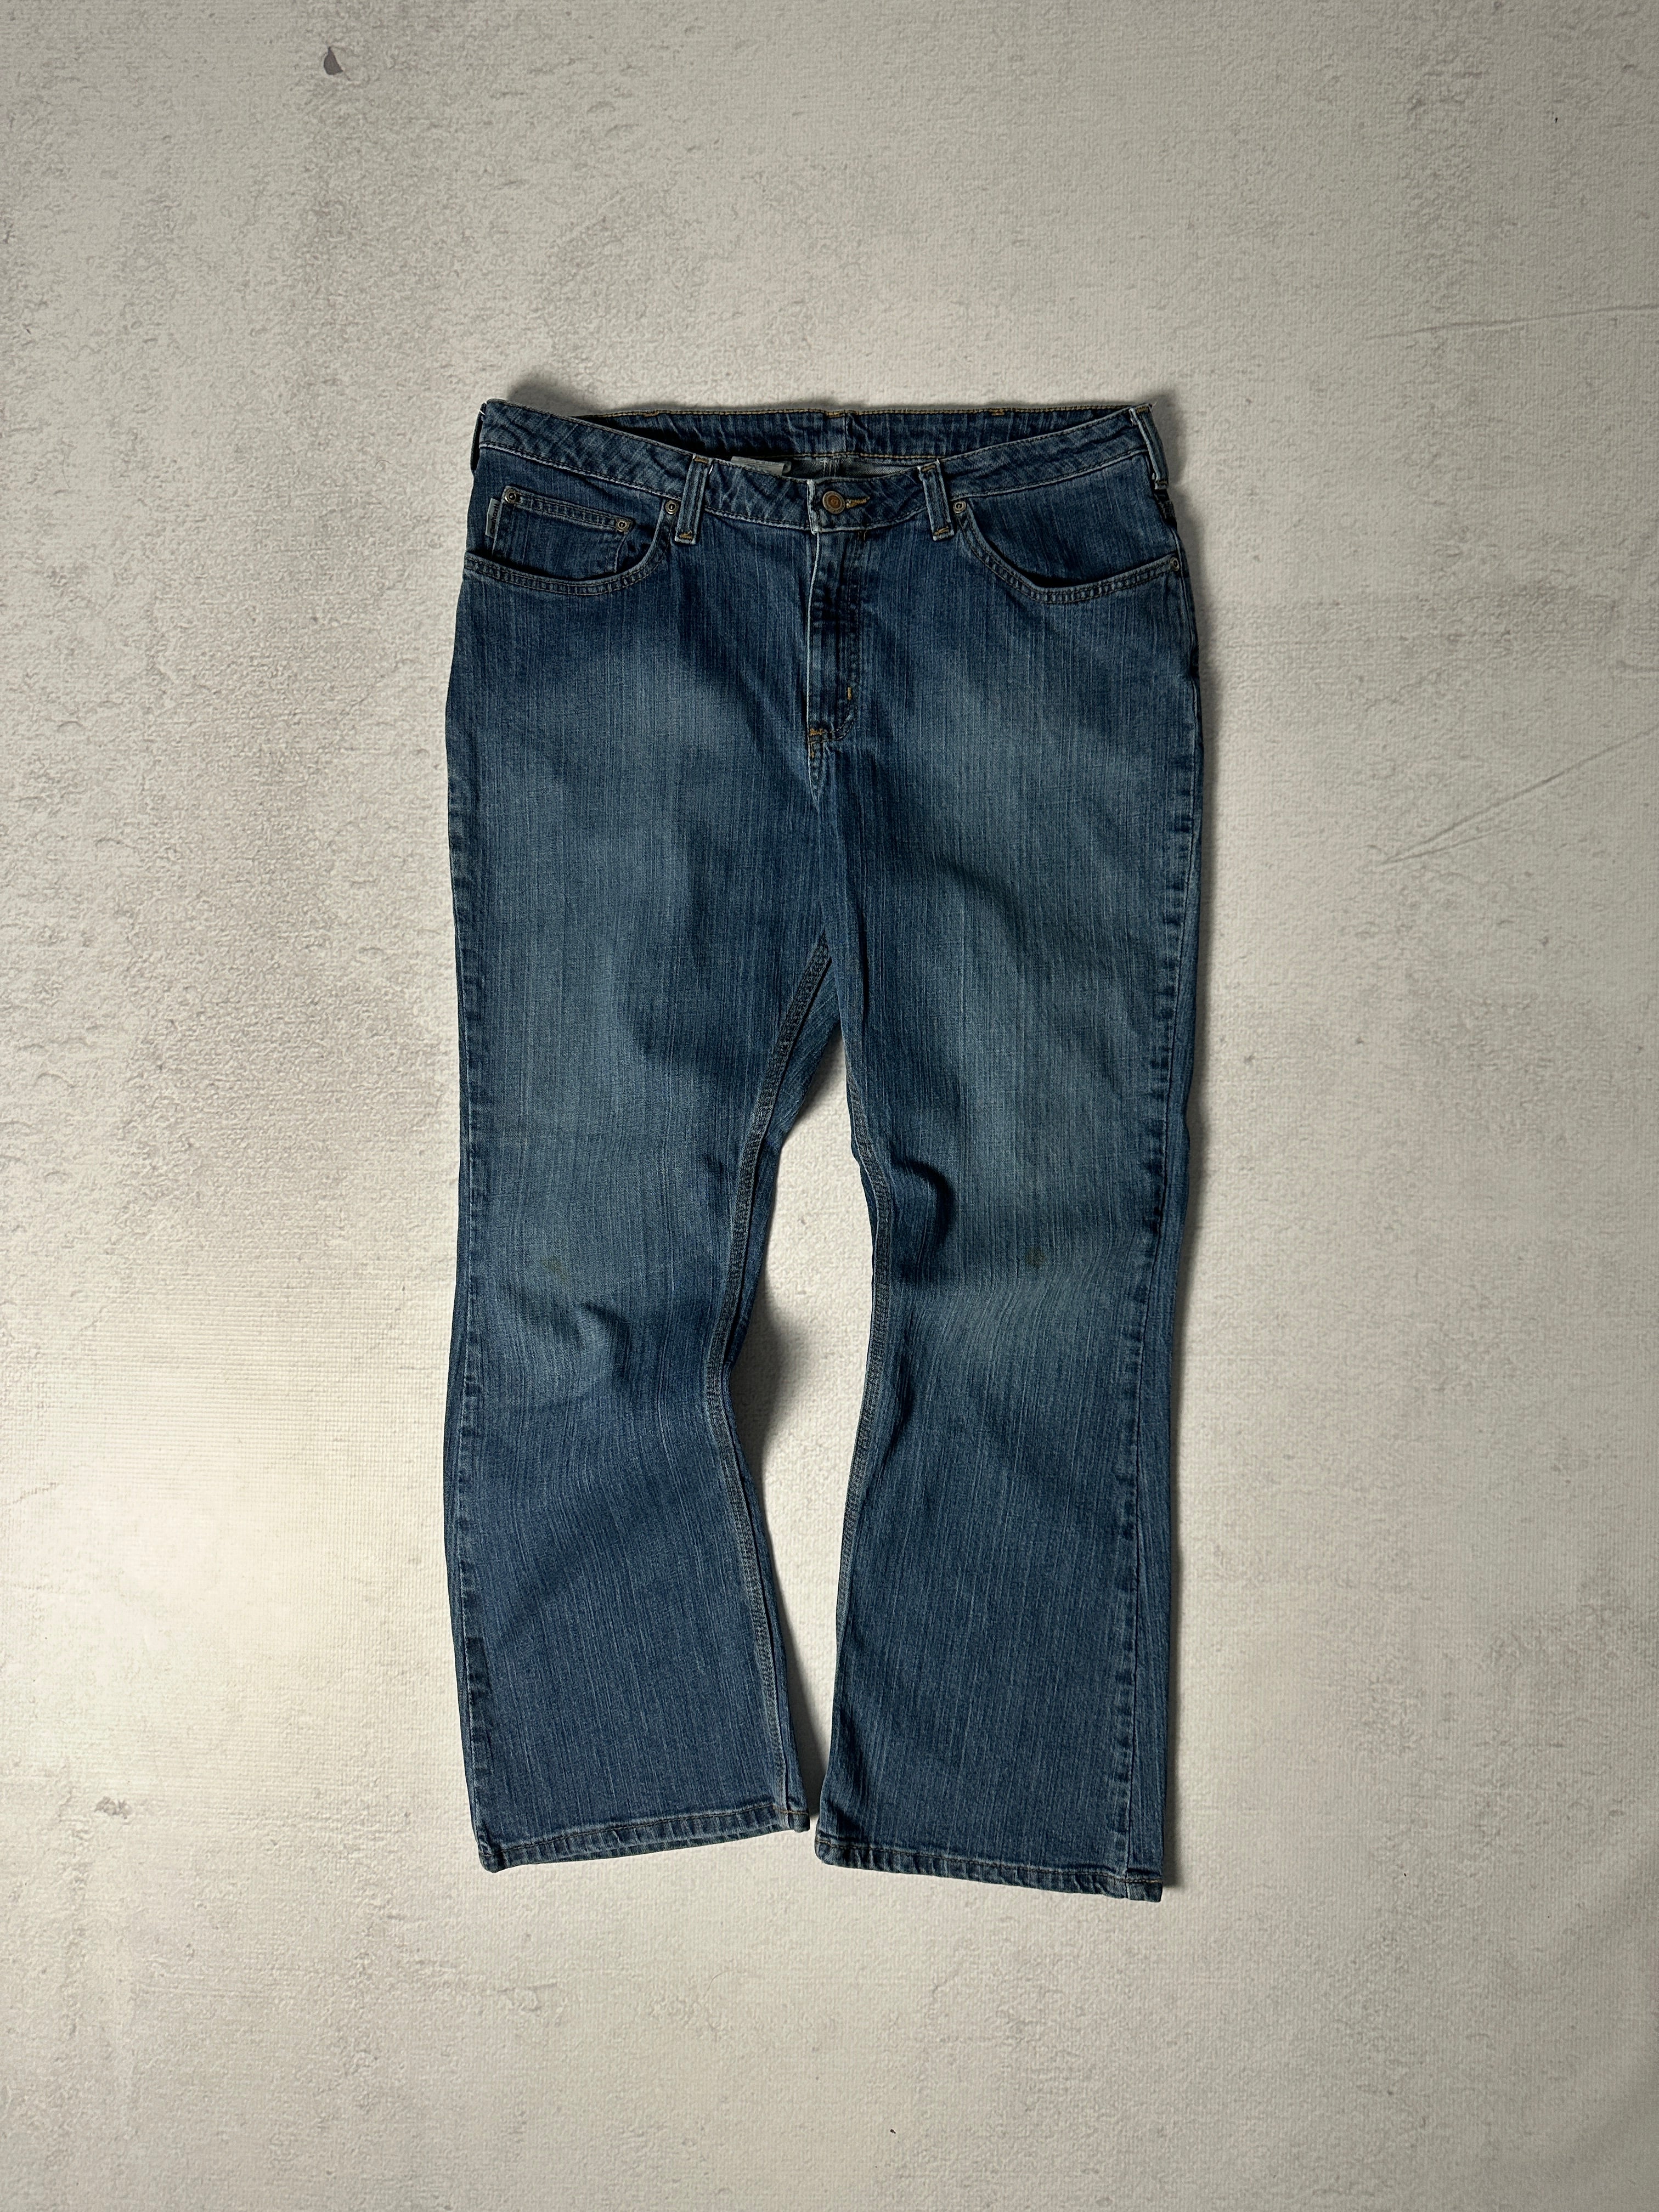 Vintage Carhartt Jeans - Women's 36 x 30